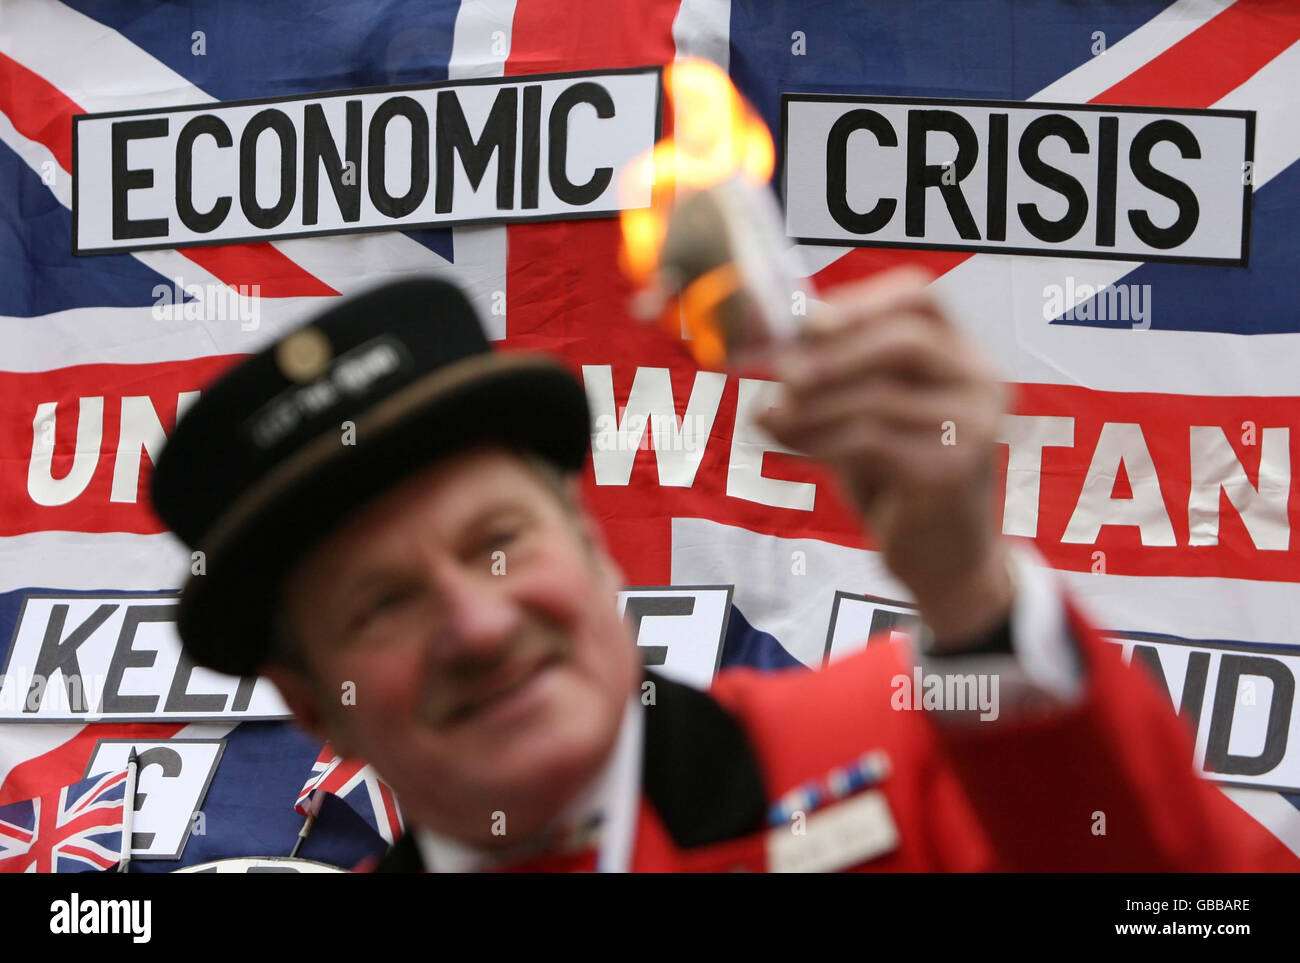 Ray Egan, abiti come John Bull, brucia una banconota da dieci euro al di fuori della Banca d'Inghilterra, come parte della manifestazione anti Euro del UK Independence Party (UKIP) per celebrare il decimo anniversario della moneta unica europea. Foto Stock